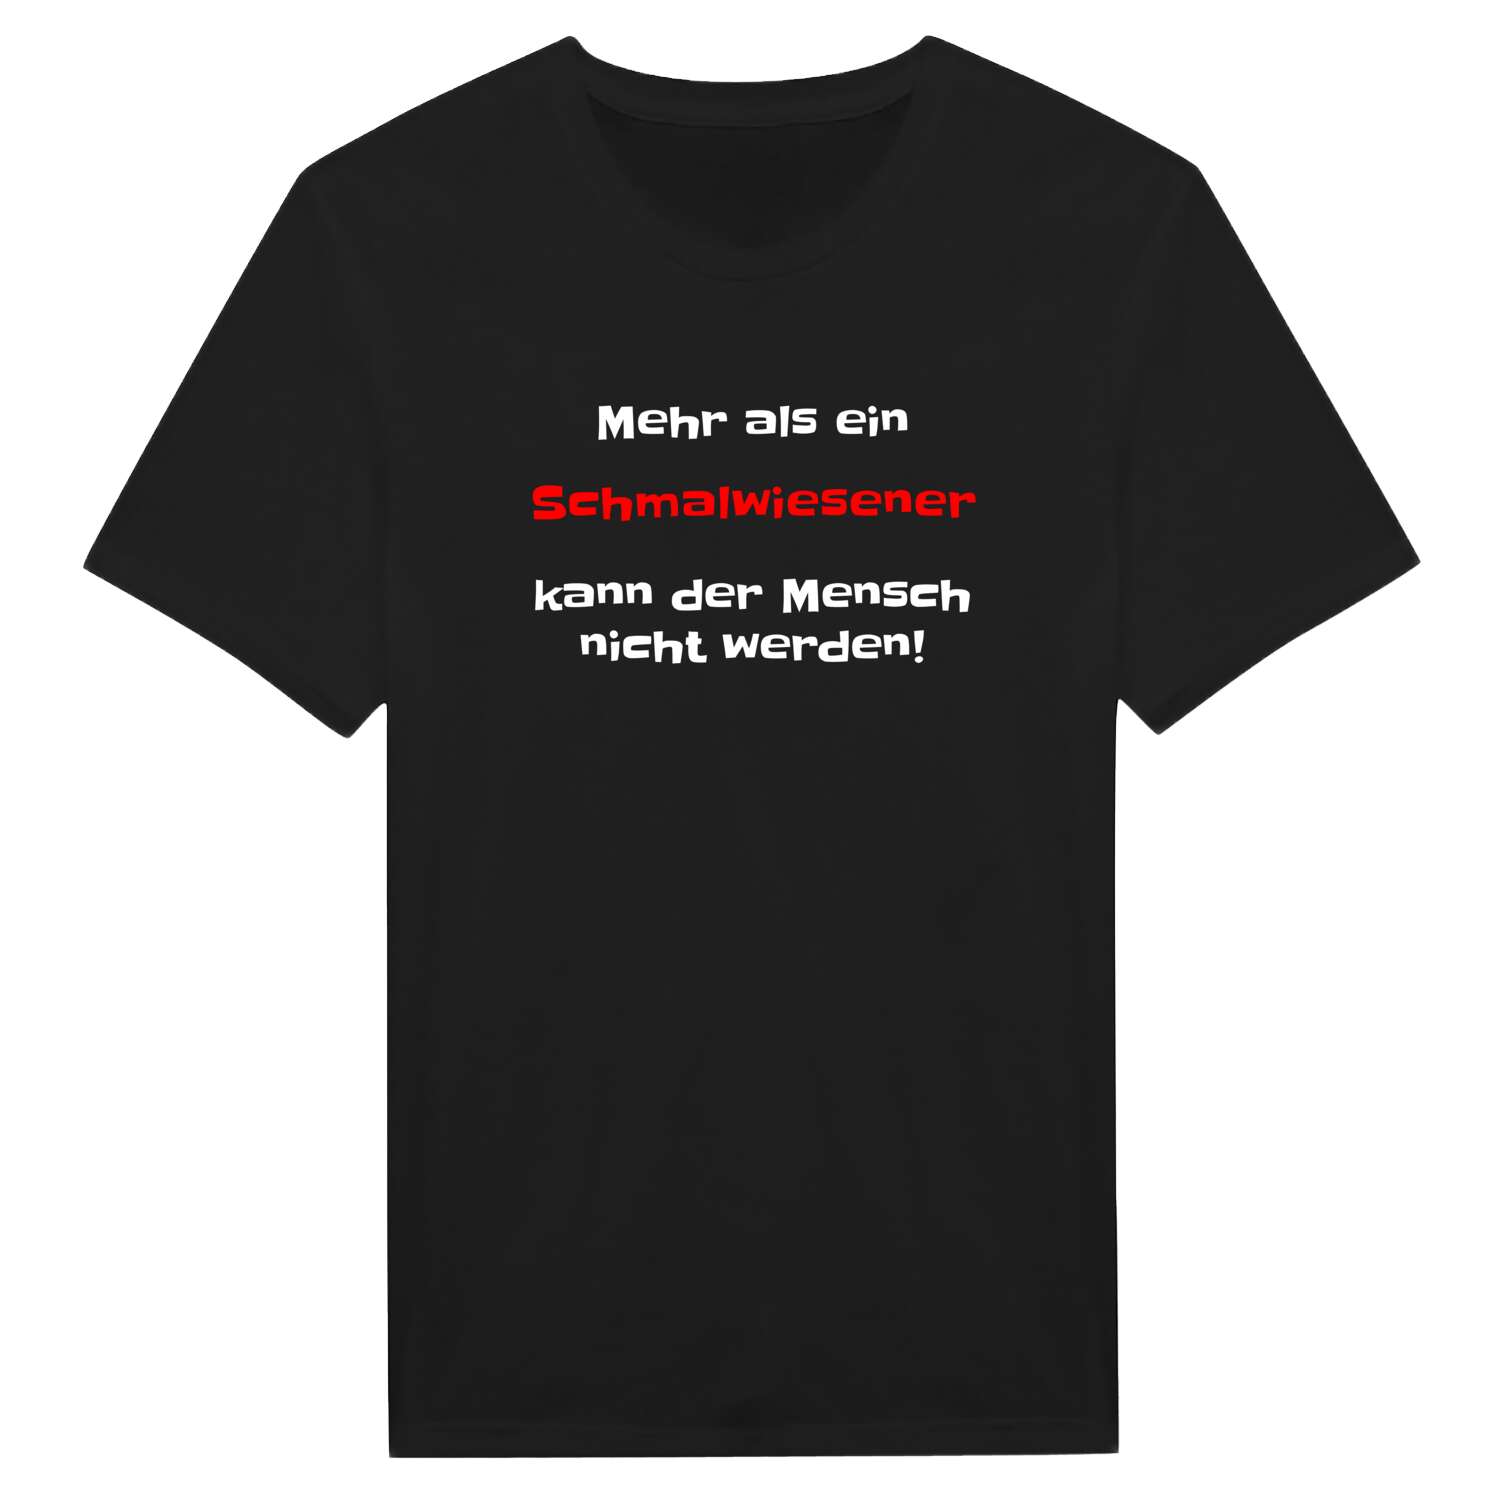 Schmalwiesen T-Shirt »Mehr als ein«